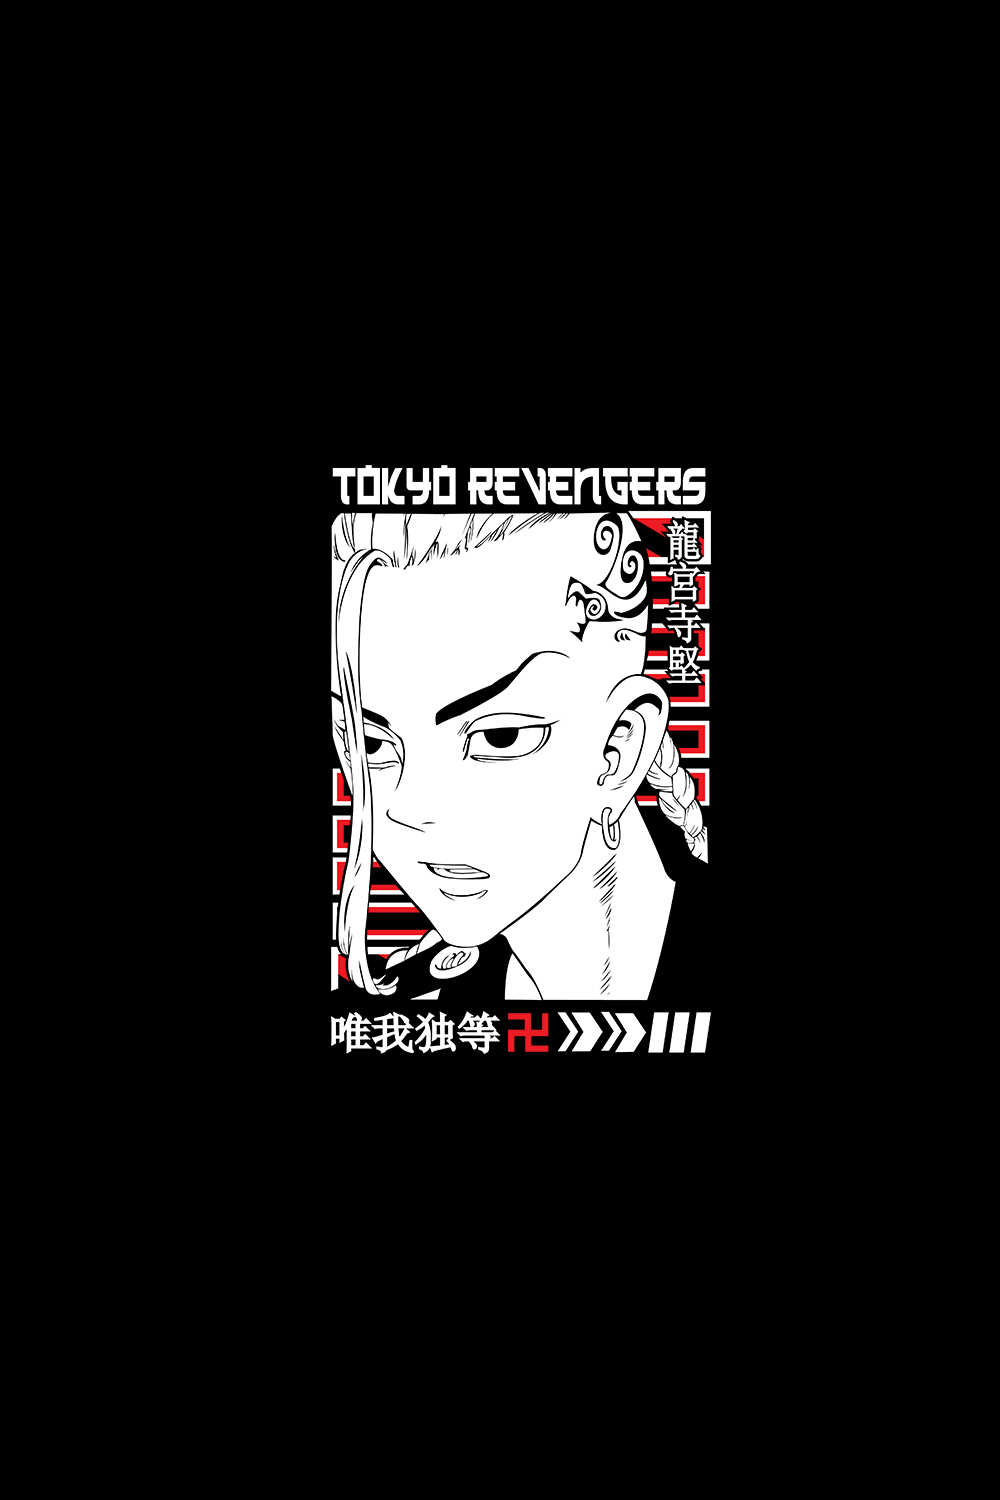 Draken Manga Tokyo Revengers SVG pinterest preview image.